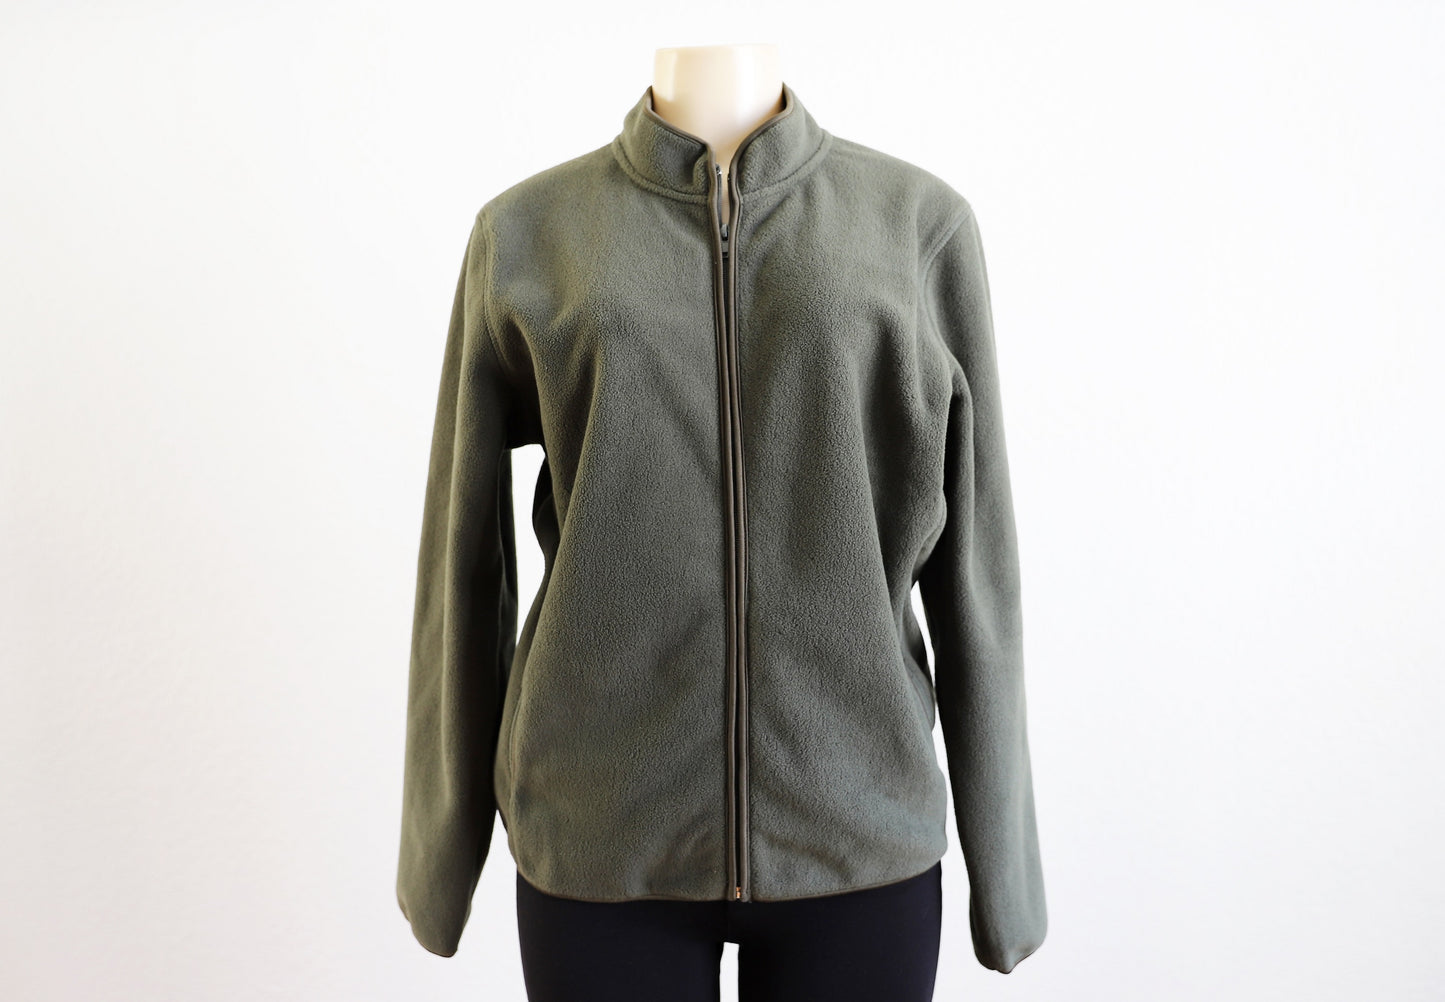 Women's Fleece Jacket Model 55001